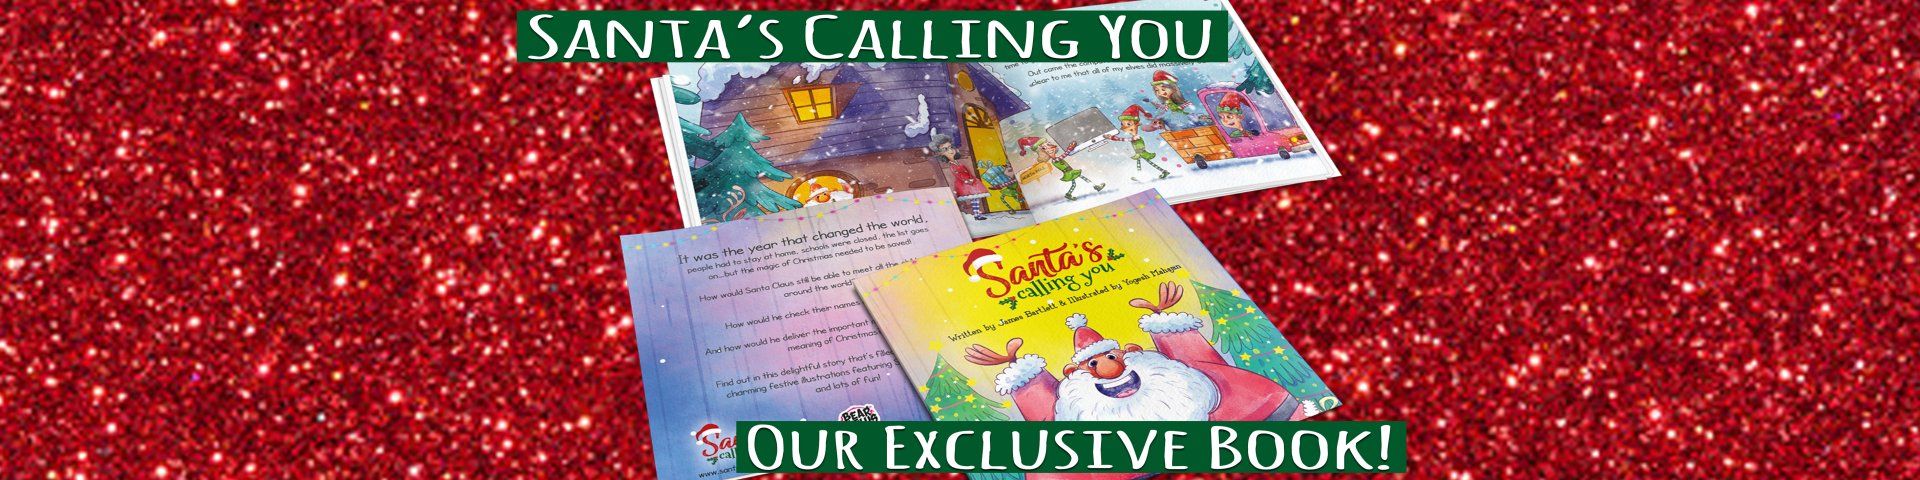 Santa's Calling You Book